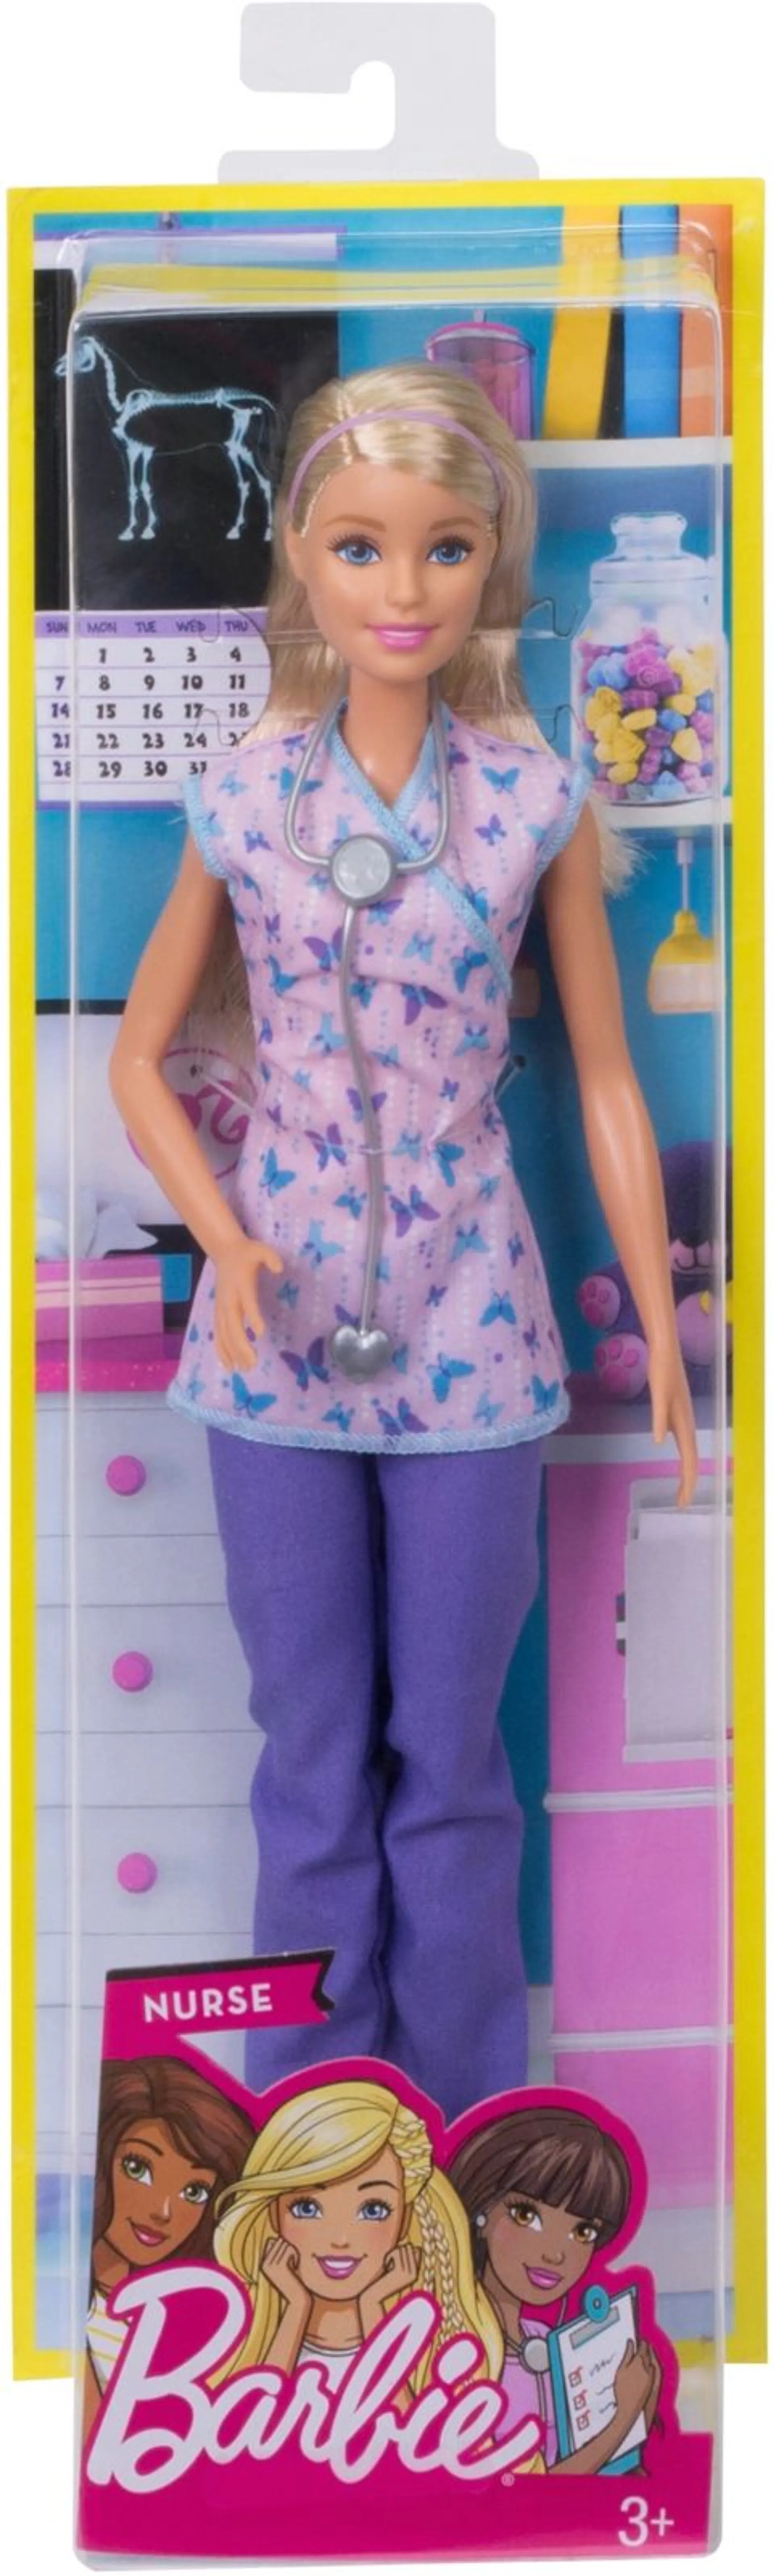 Barbie Careers nukke eri ammateilla - 4